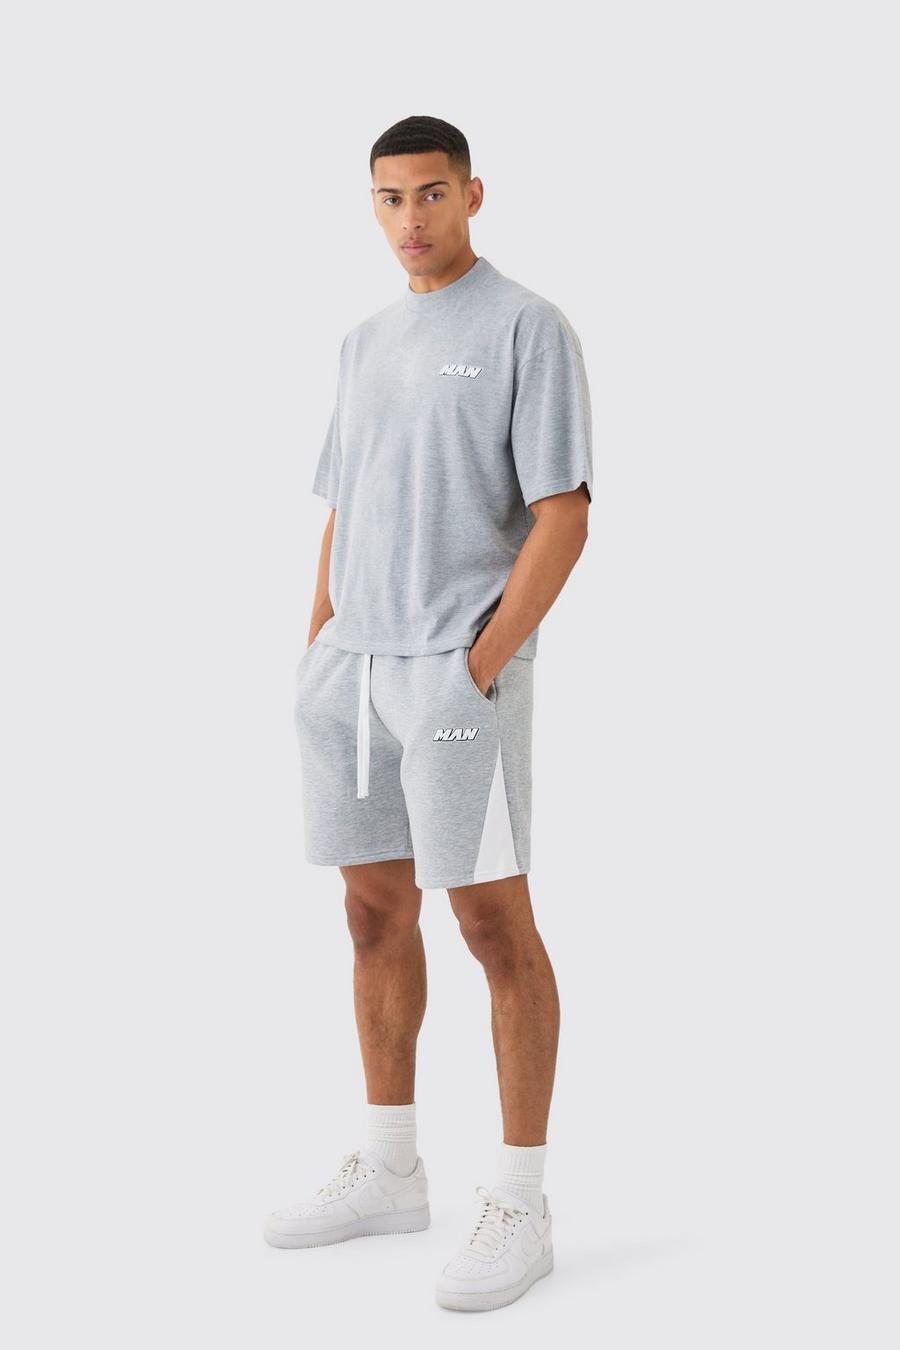 Kastiges Man Oversize T-Shirt und Shorts mit Kontrast-Naht, Grey marl